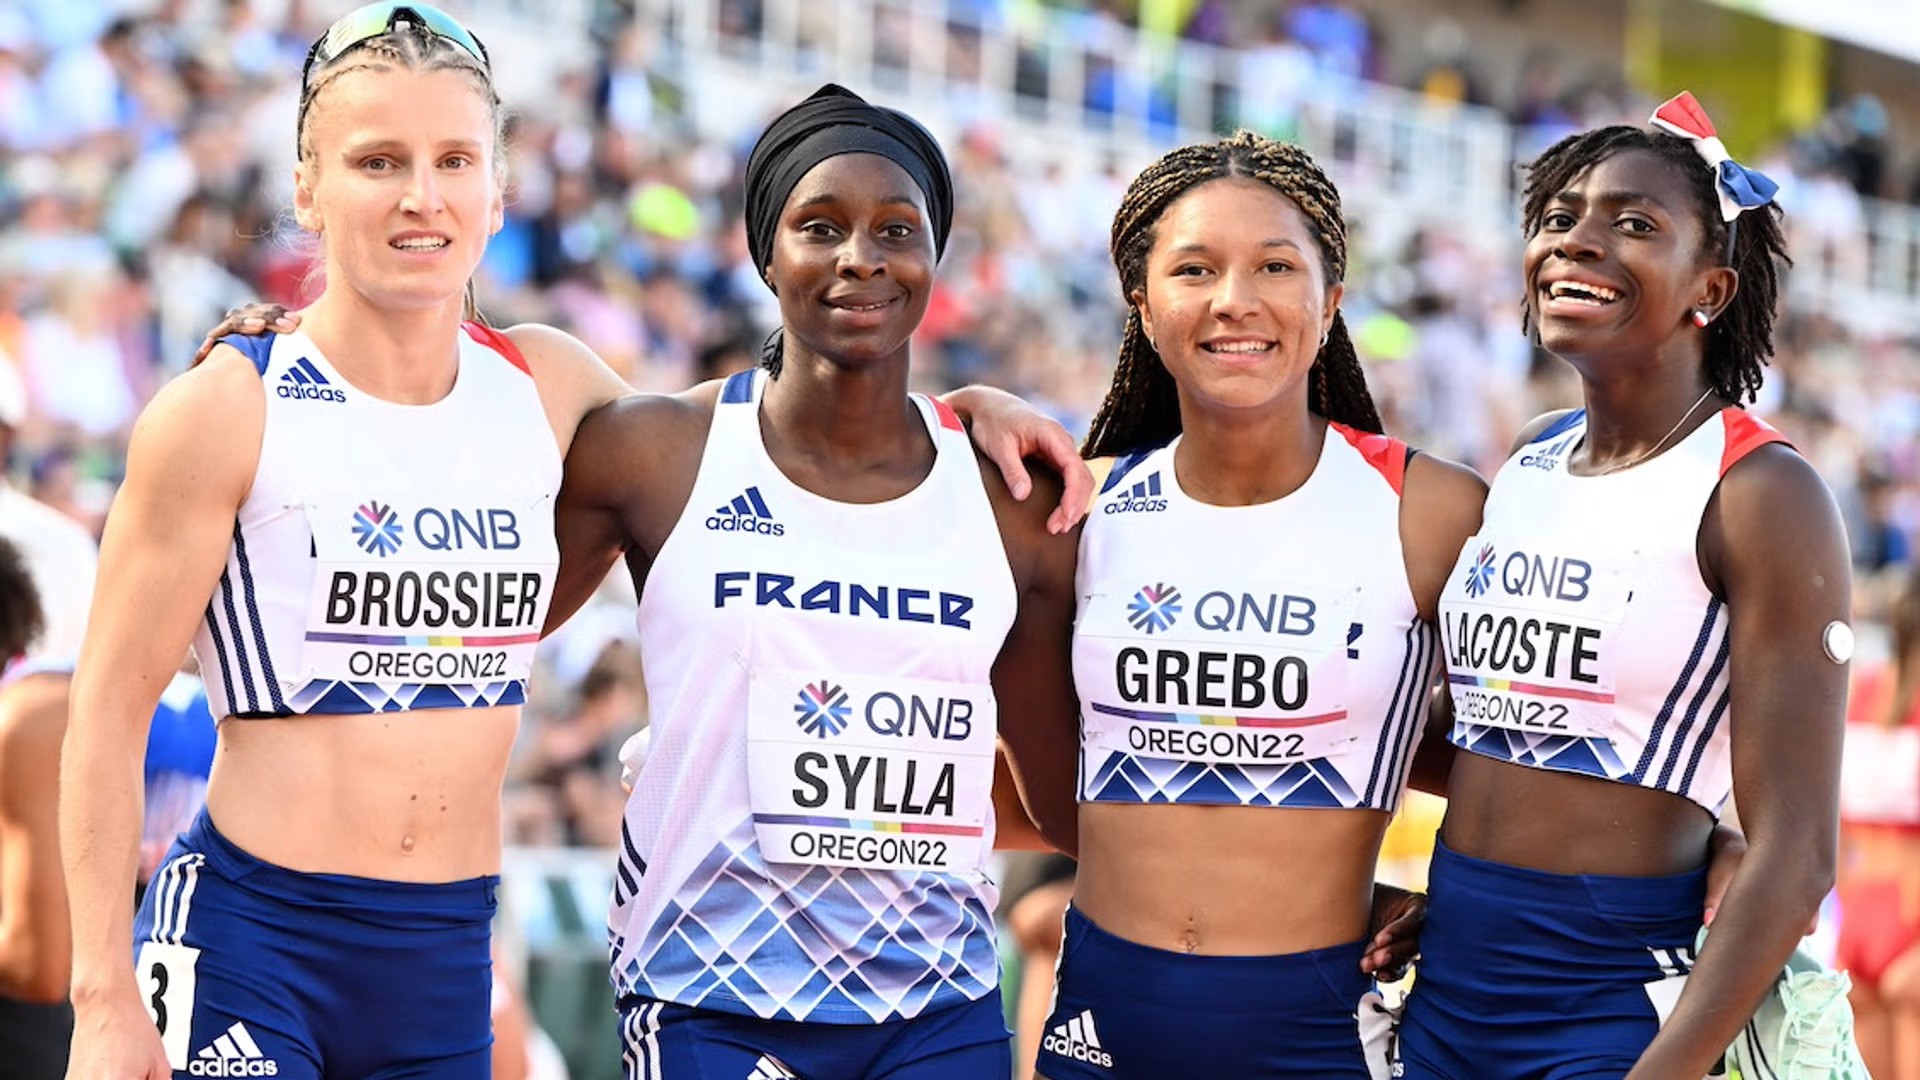 Franse atleet ruilt mogelijk hoofddoek voor pet om verbod op Olympische openingsceremonie te ontlopen